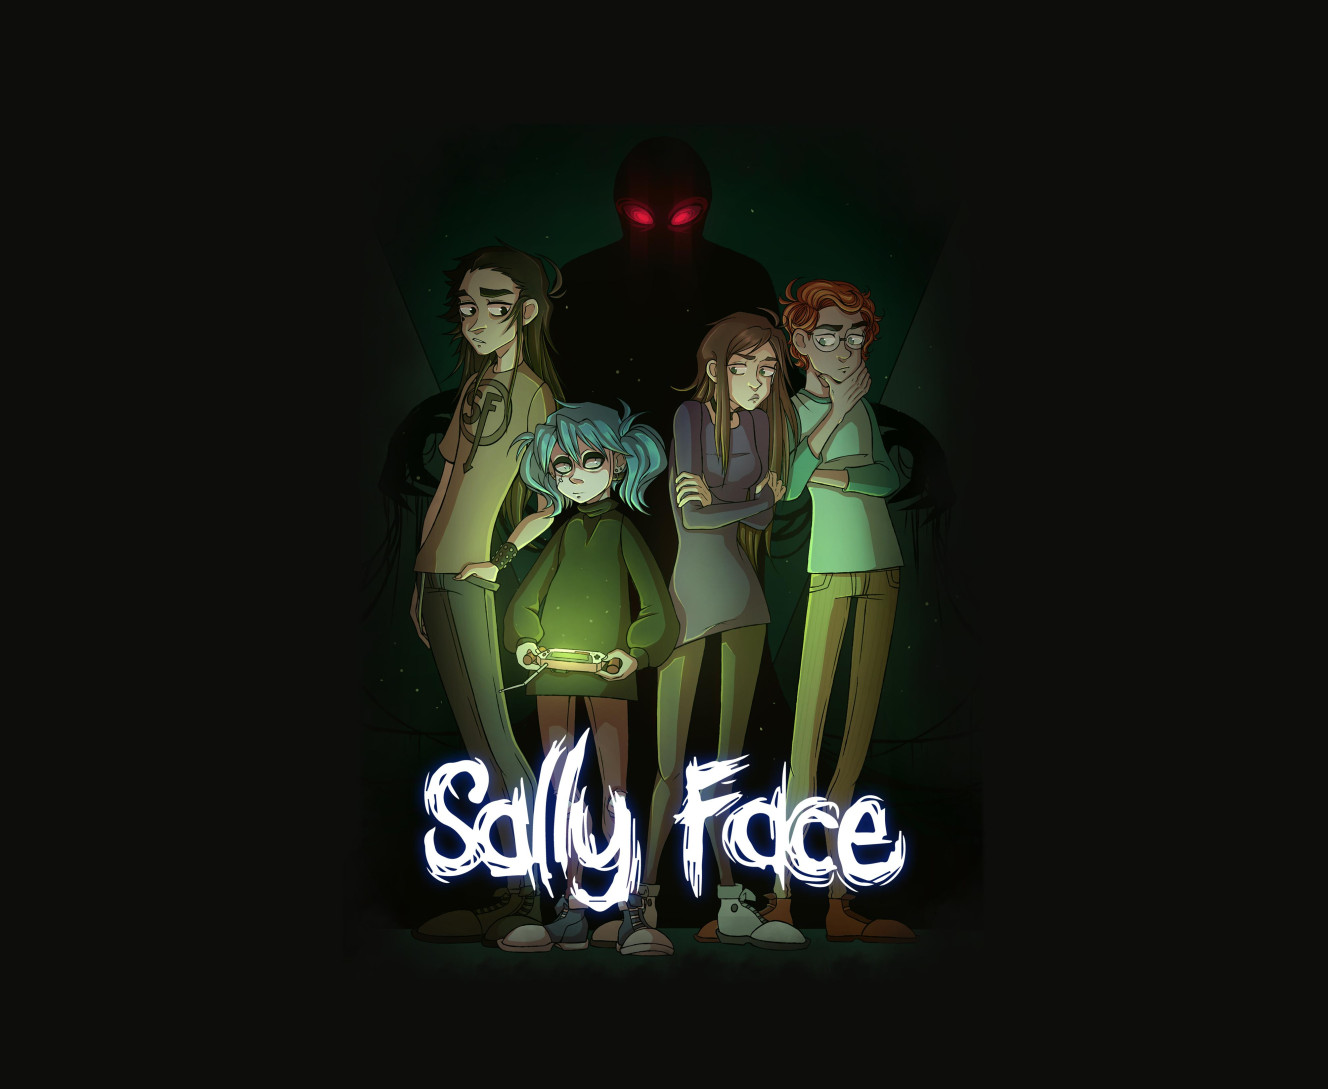 Sally Face (13)